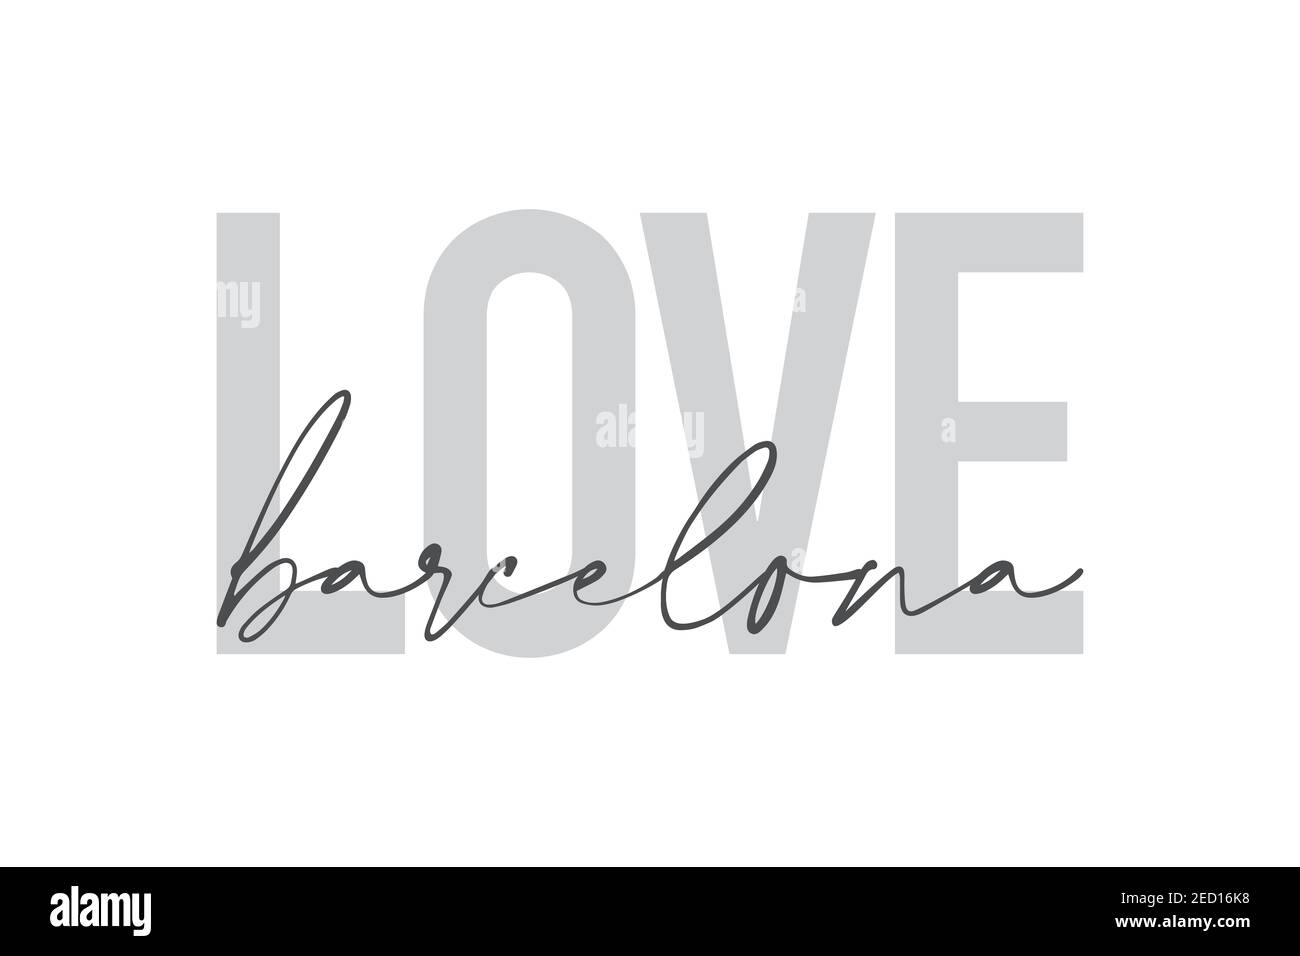 Design grafico moderno, urbano, semplice di un detto 'Love Barcelona' in colori grigi. Tipografia trendy, fredda, manoscritta Foto Stock